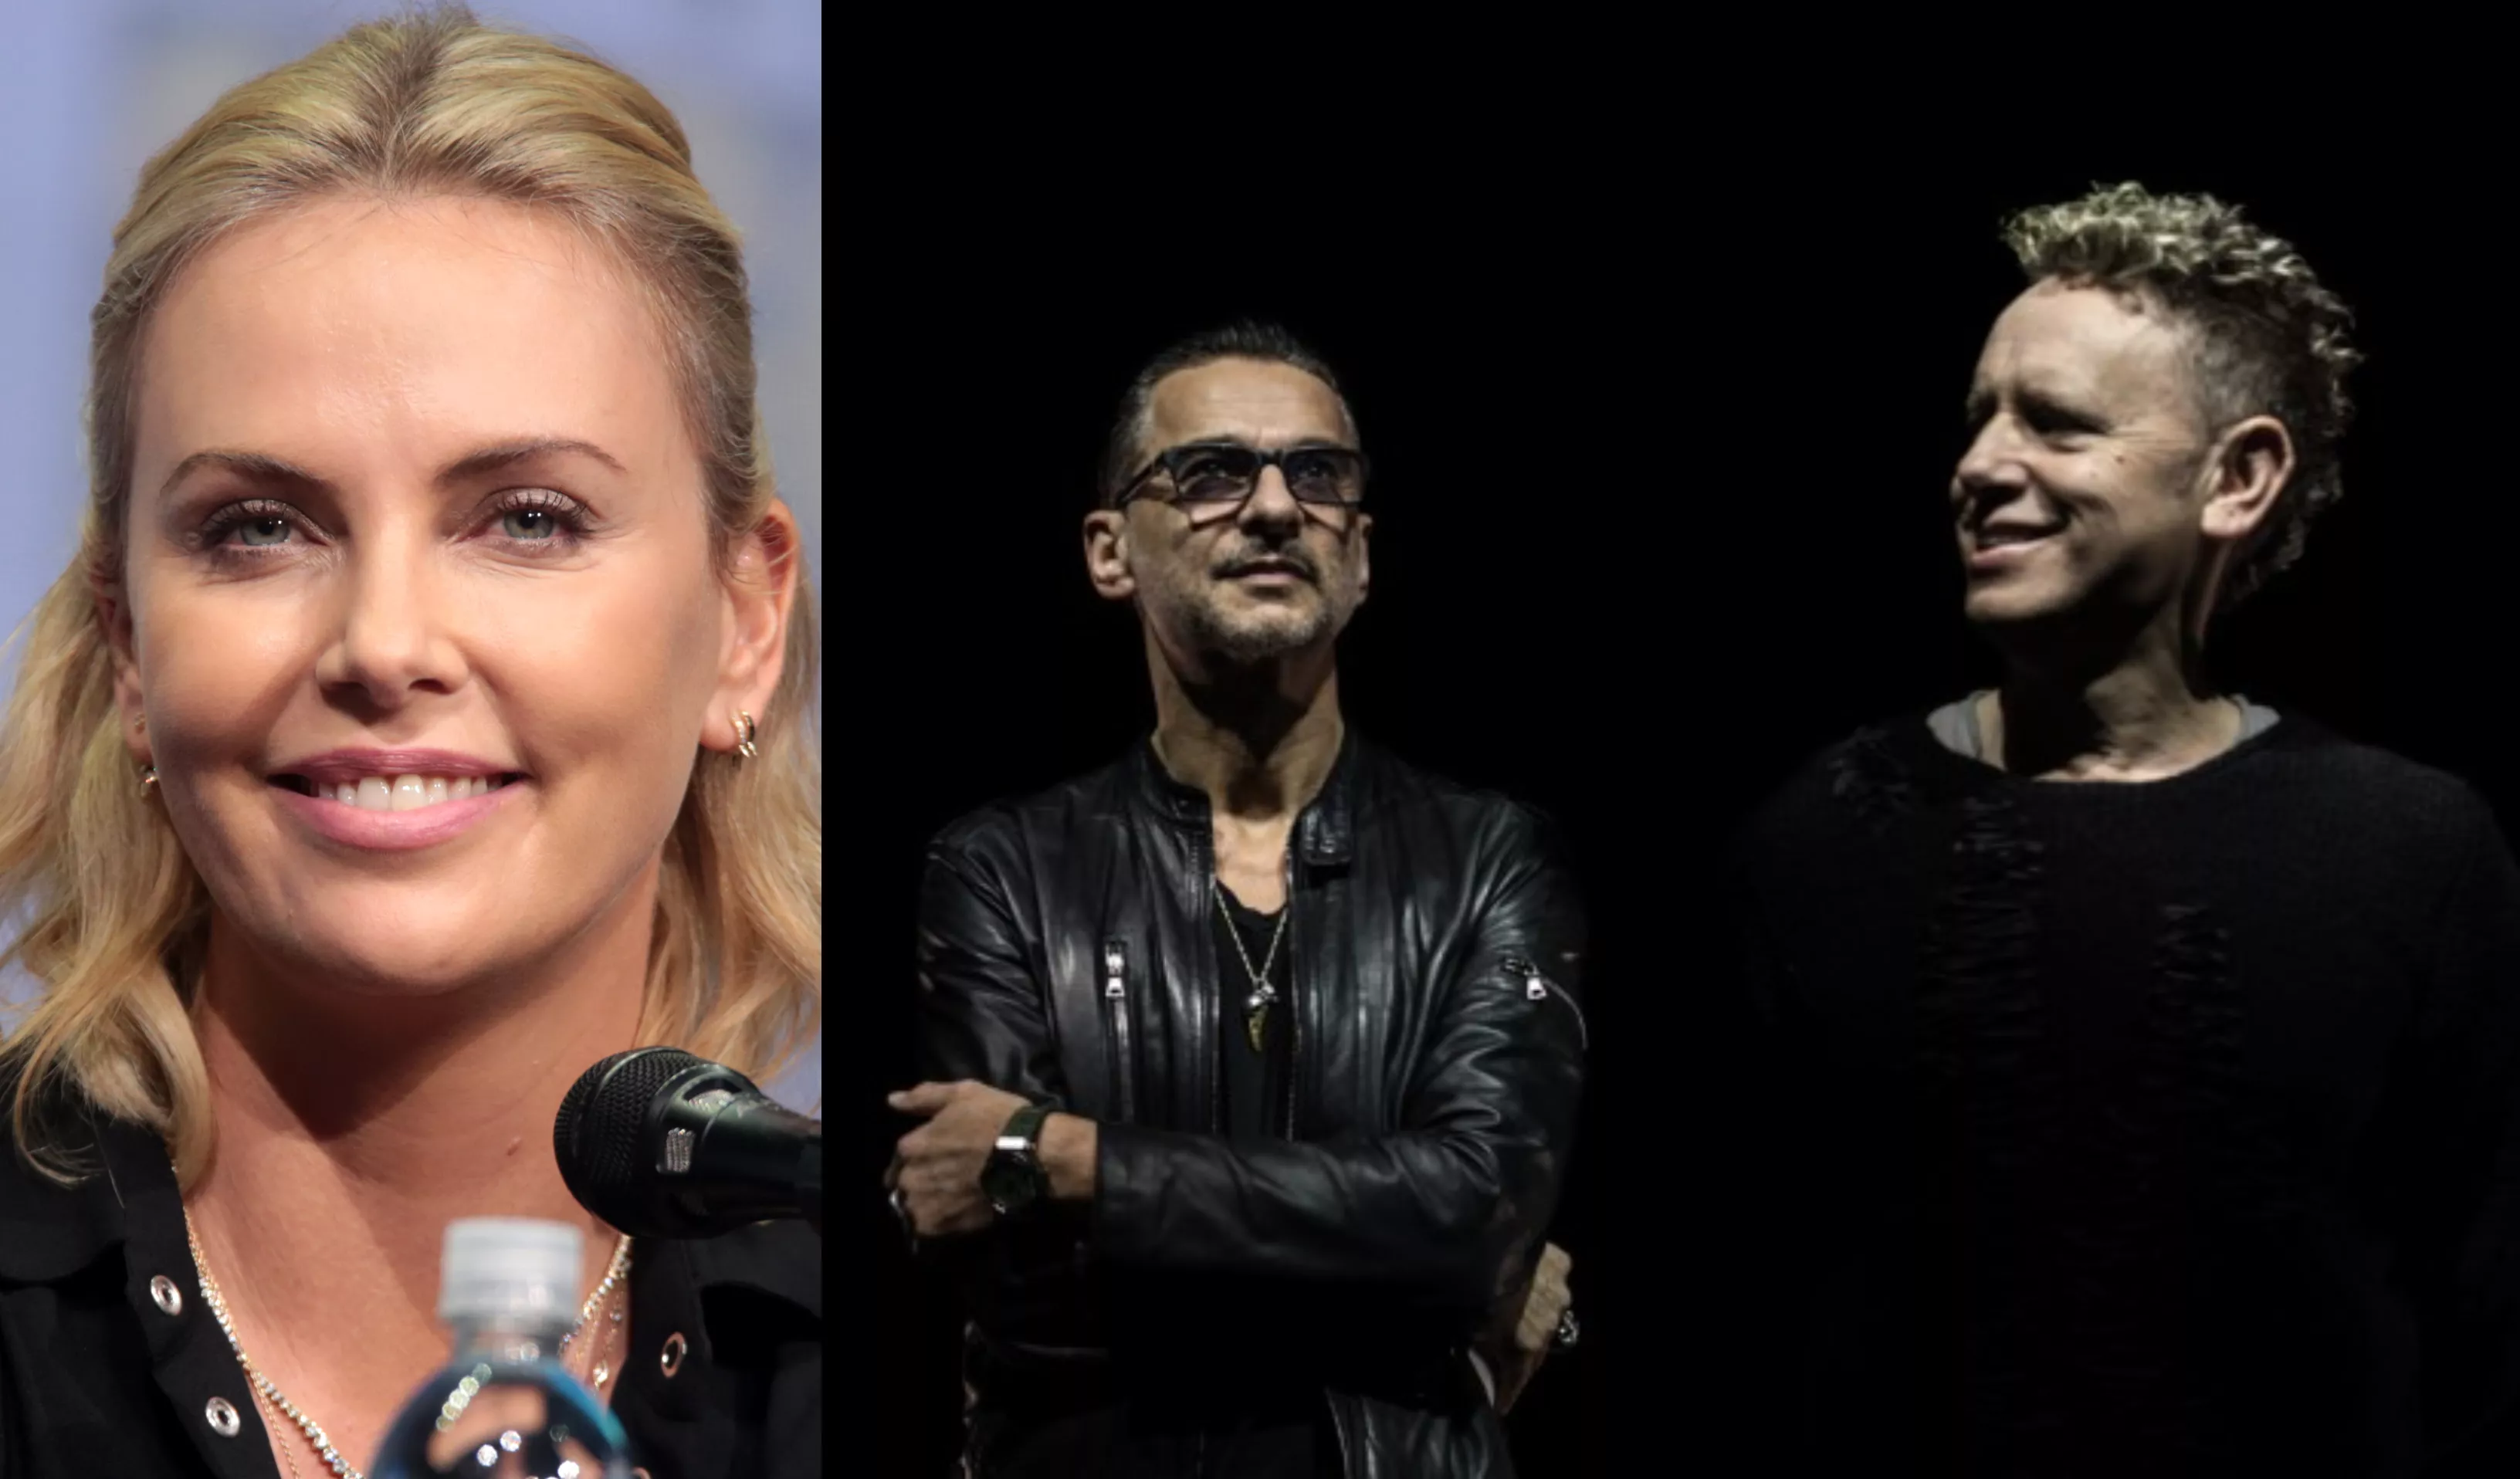 Læs skuespillerens Hall of Fame-hyldest til Depeche Mode